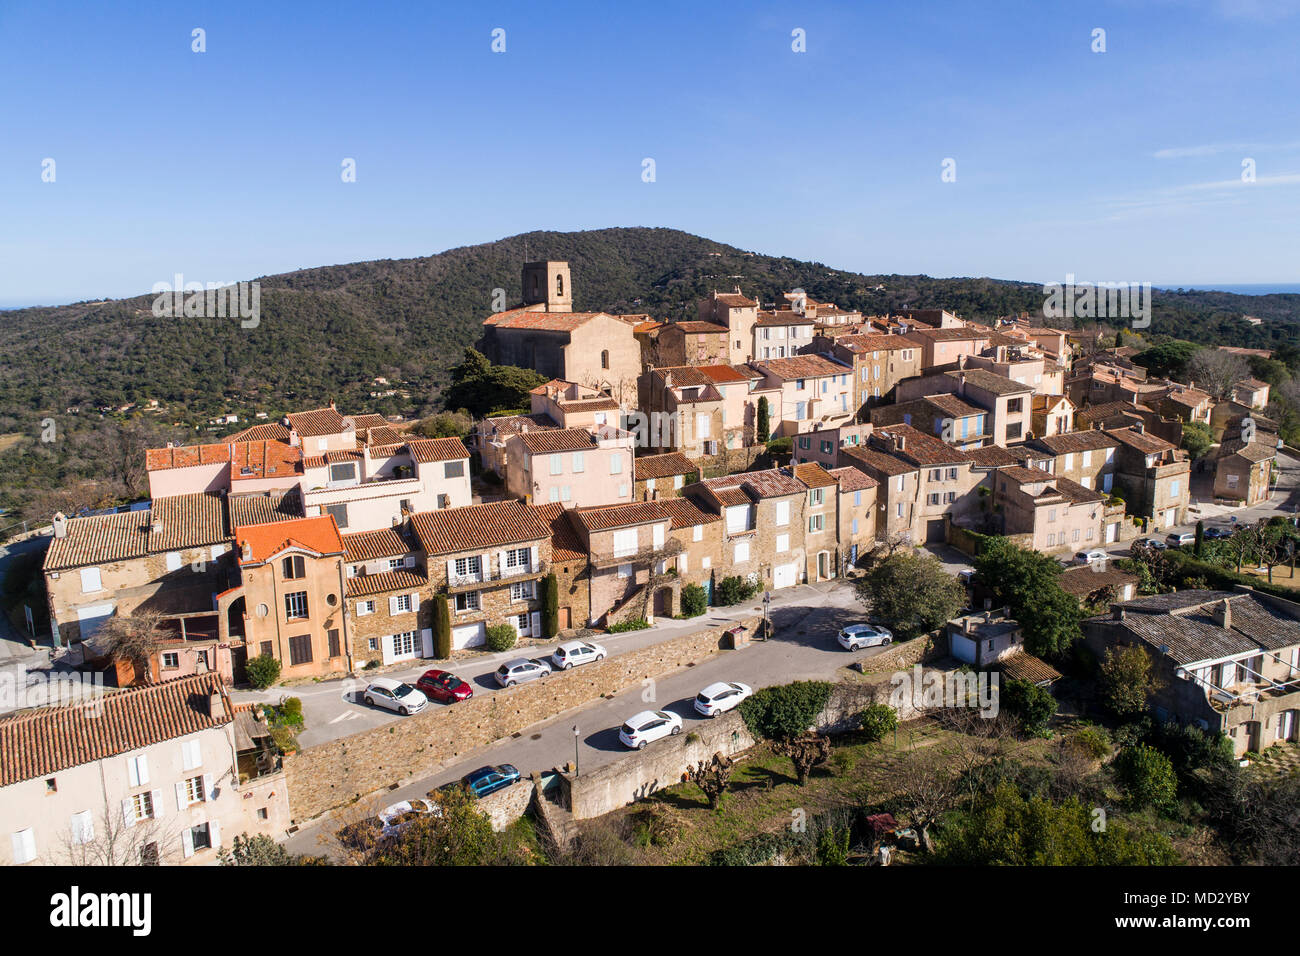 France, Provence-Alpes-Côte d'Azur, Var, vue aérienne du village de Gassin, étiqueté Les Plus Beaux Villages de France (la plus belle Vill Banque D'Images